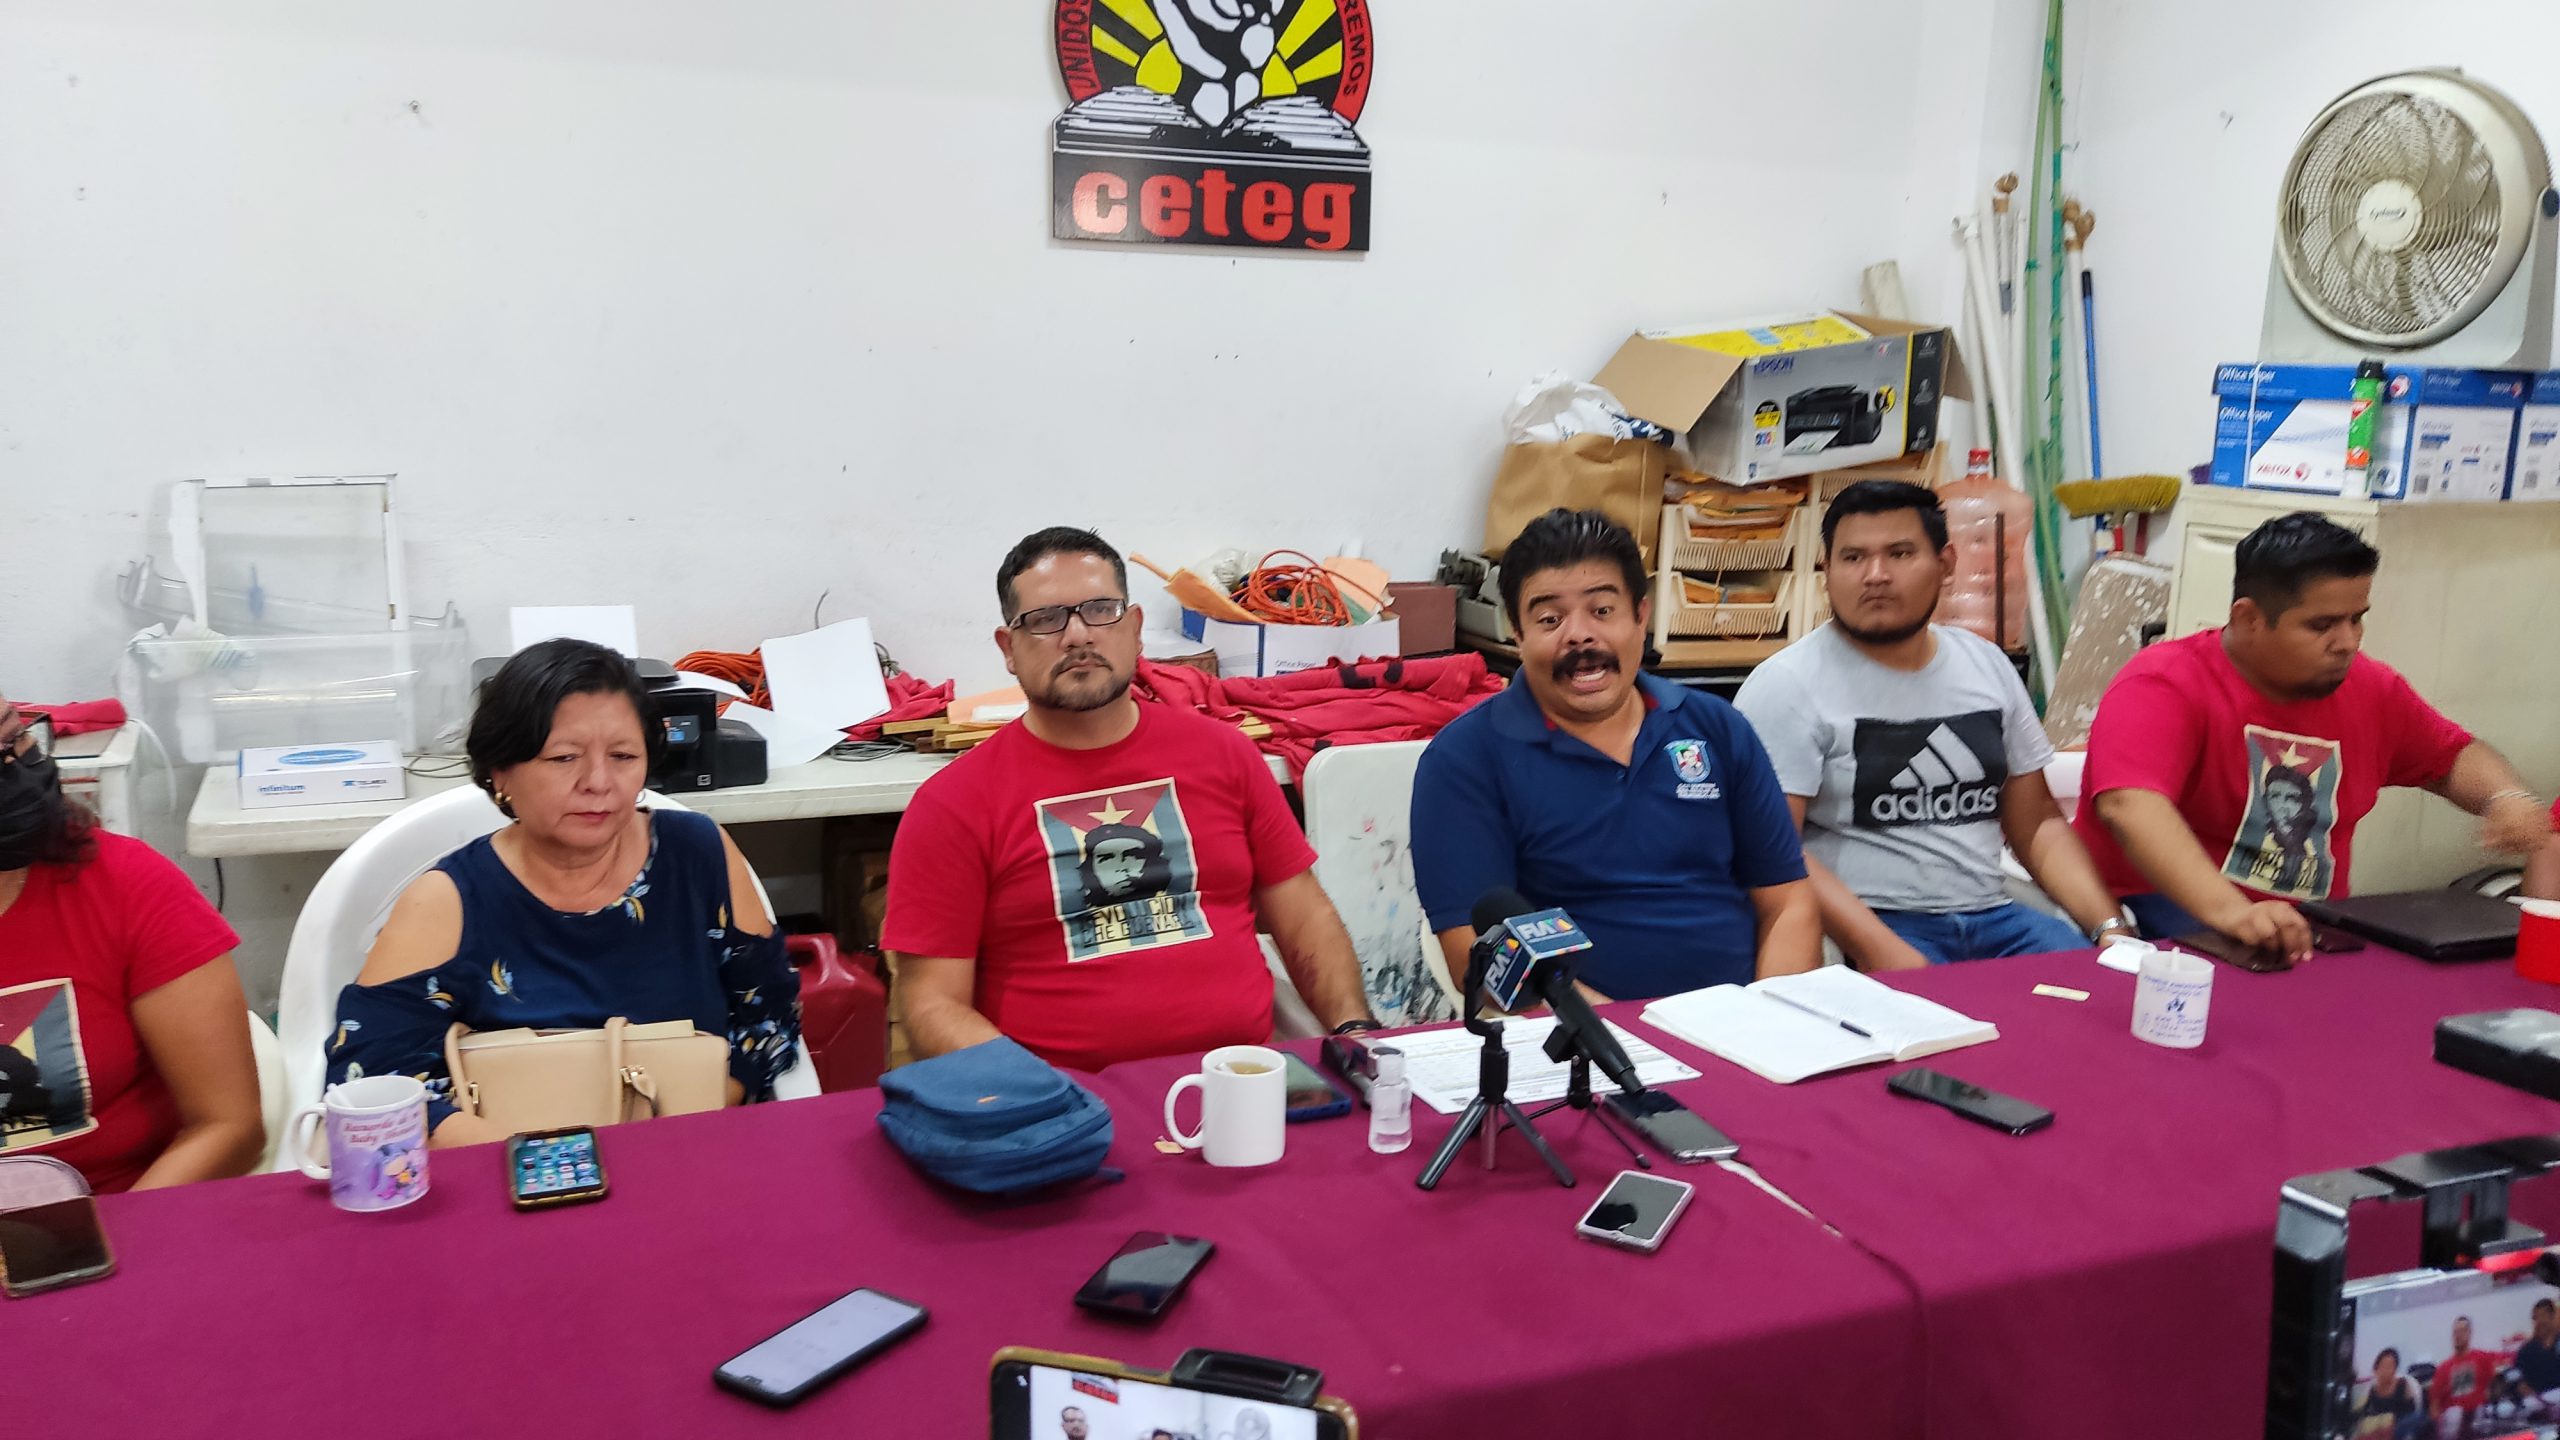 En riesgo de que no inicie ciclo escolar en Guerrero, responsabilizan a Marcial: Ceteg